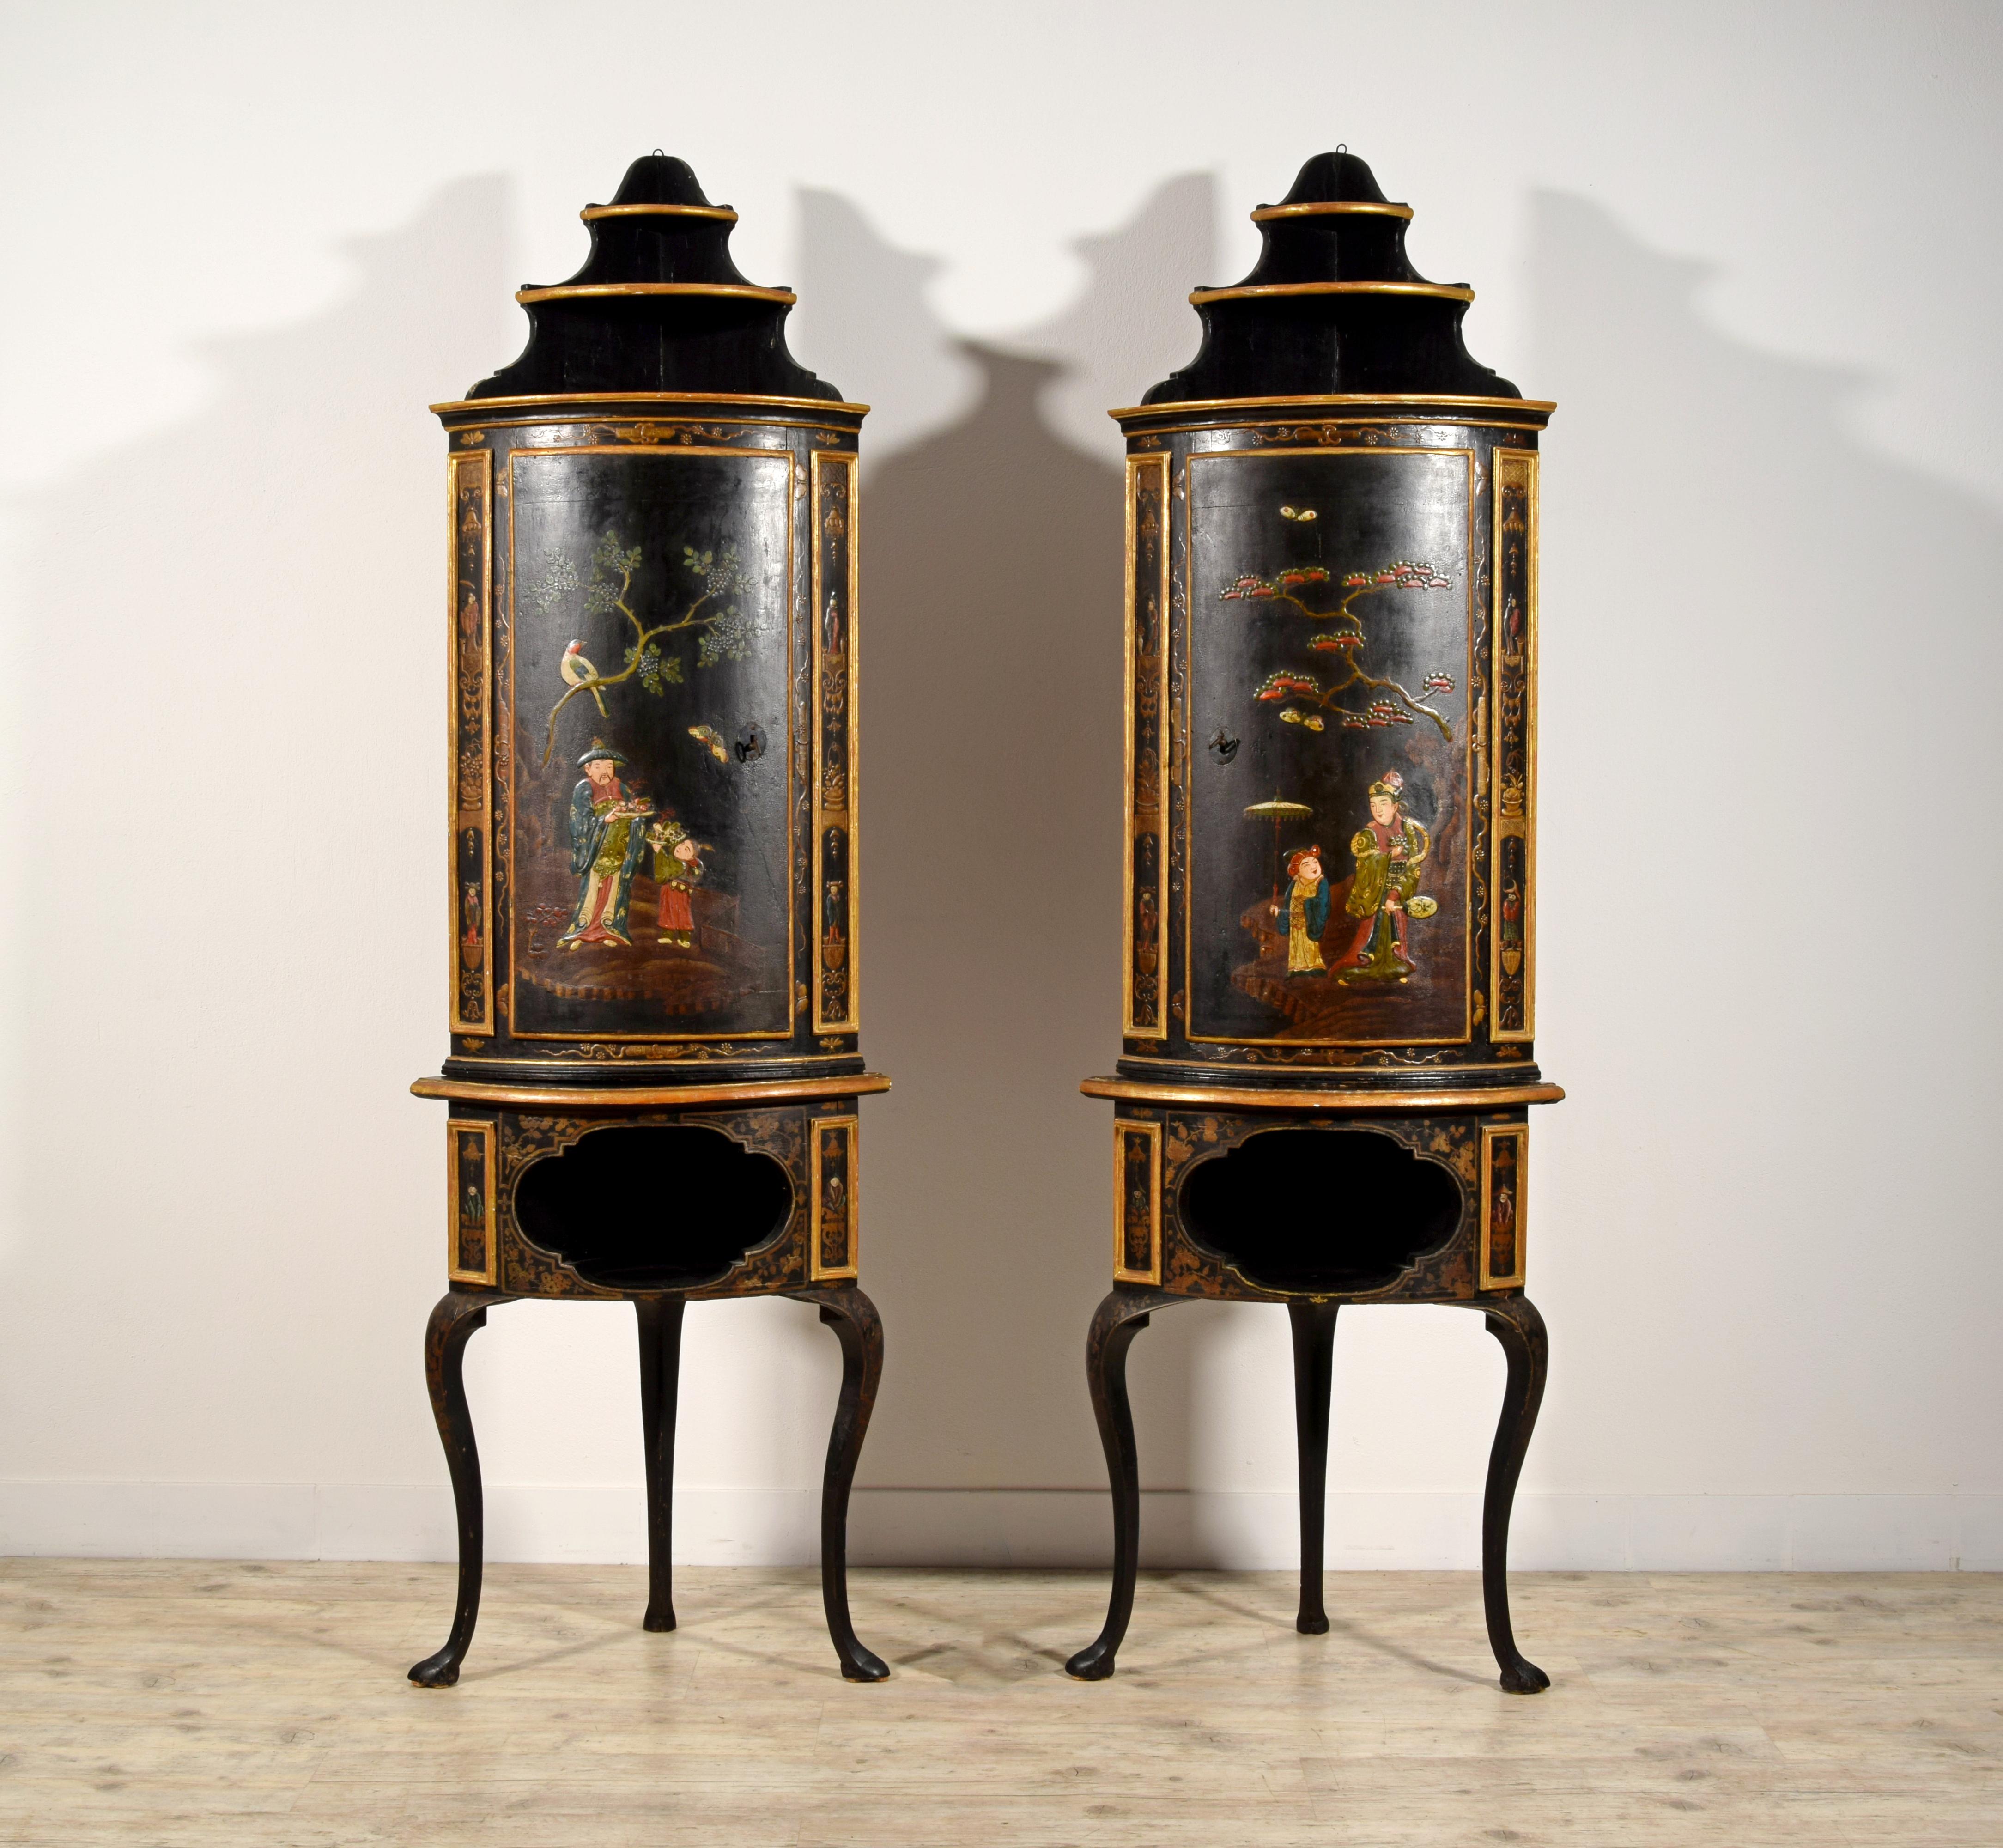 Paire d'armoires d'angle italiennes Rococo Chinoiserie en bois laqué du 18ème siècle 
Cette paire de meubles d'angle a été fabriquée dans le Piémont, en Italie, vers le milieu du dix-huitième siècle, selon le goût du baroque.
La structure est en